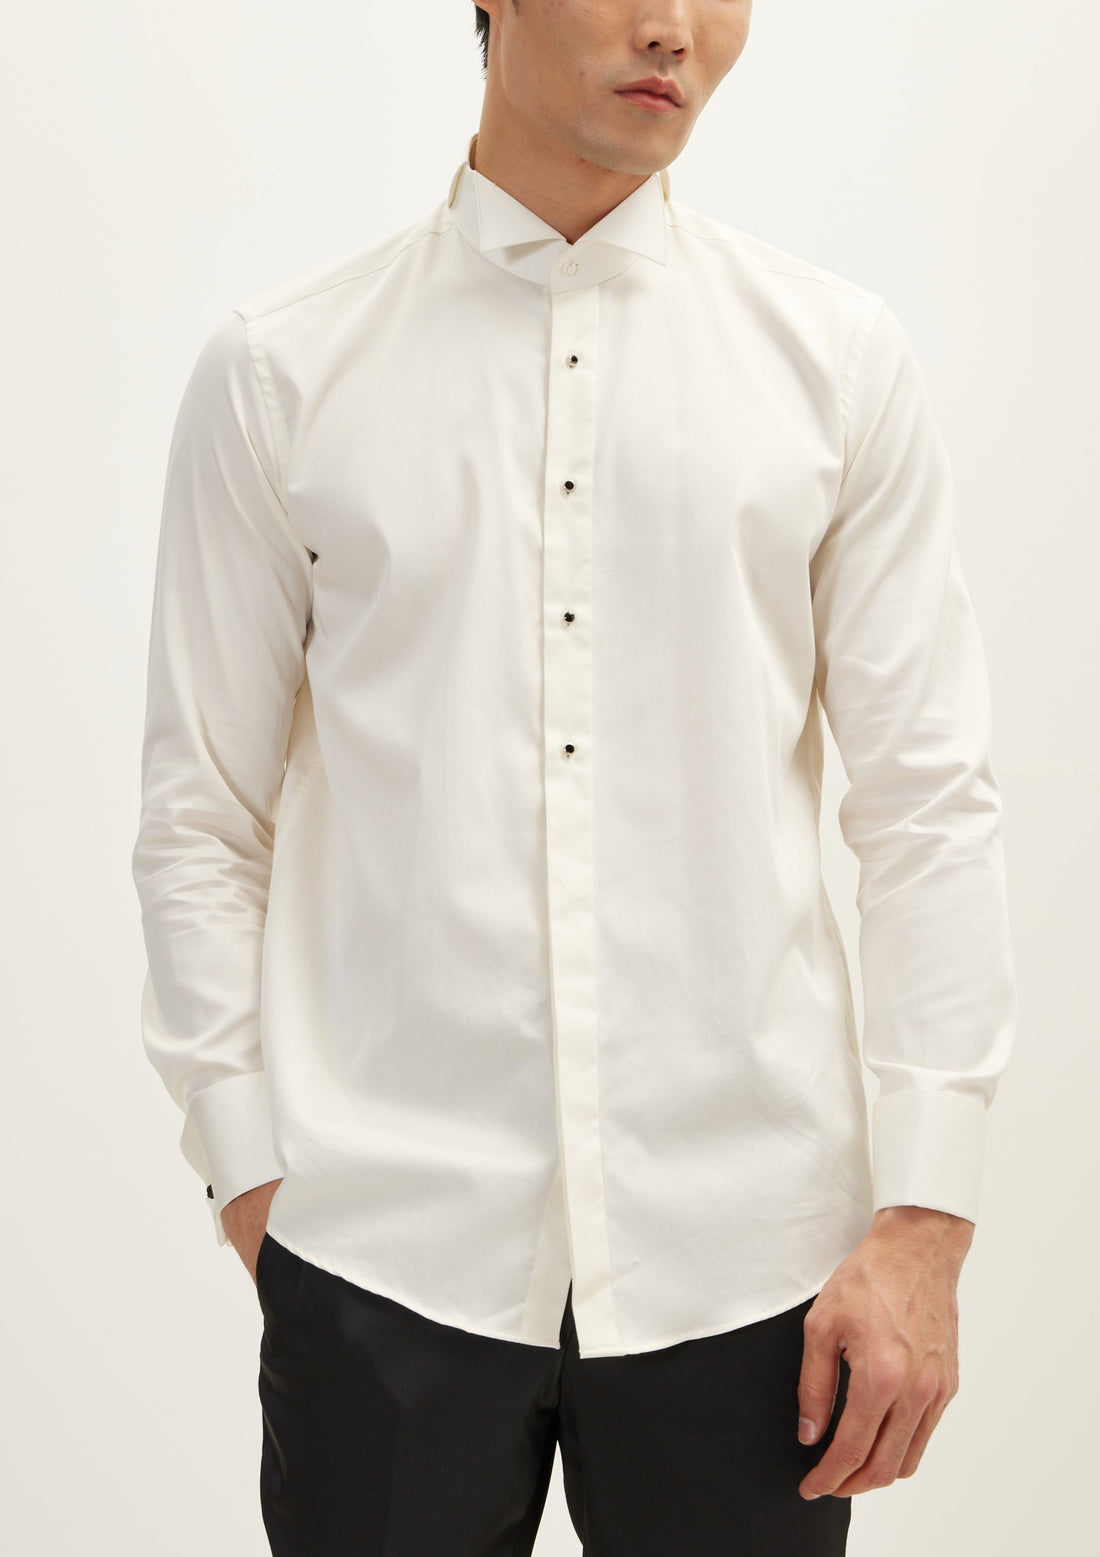 Camisa de esmoquin de manga larga elegante y ajustada con botones de joya - Beige claro